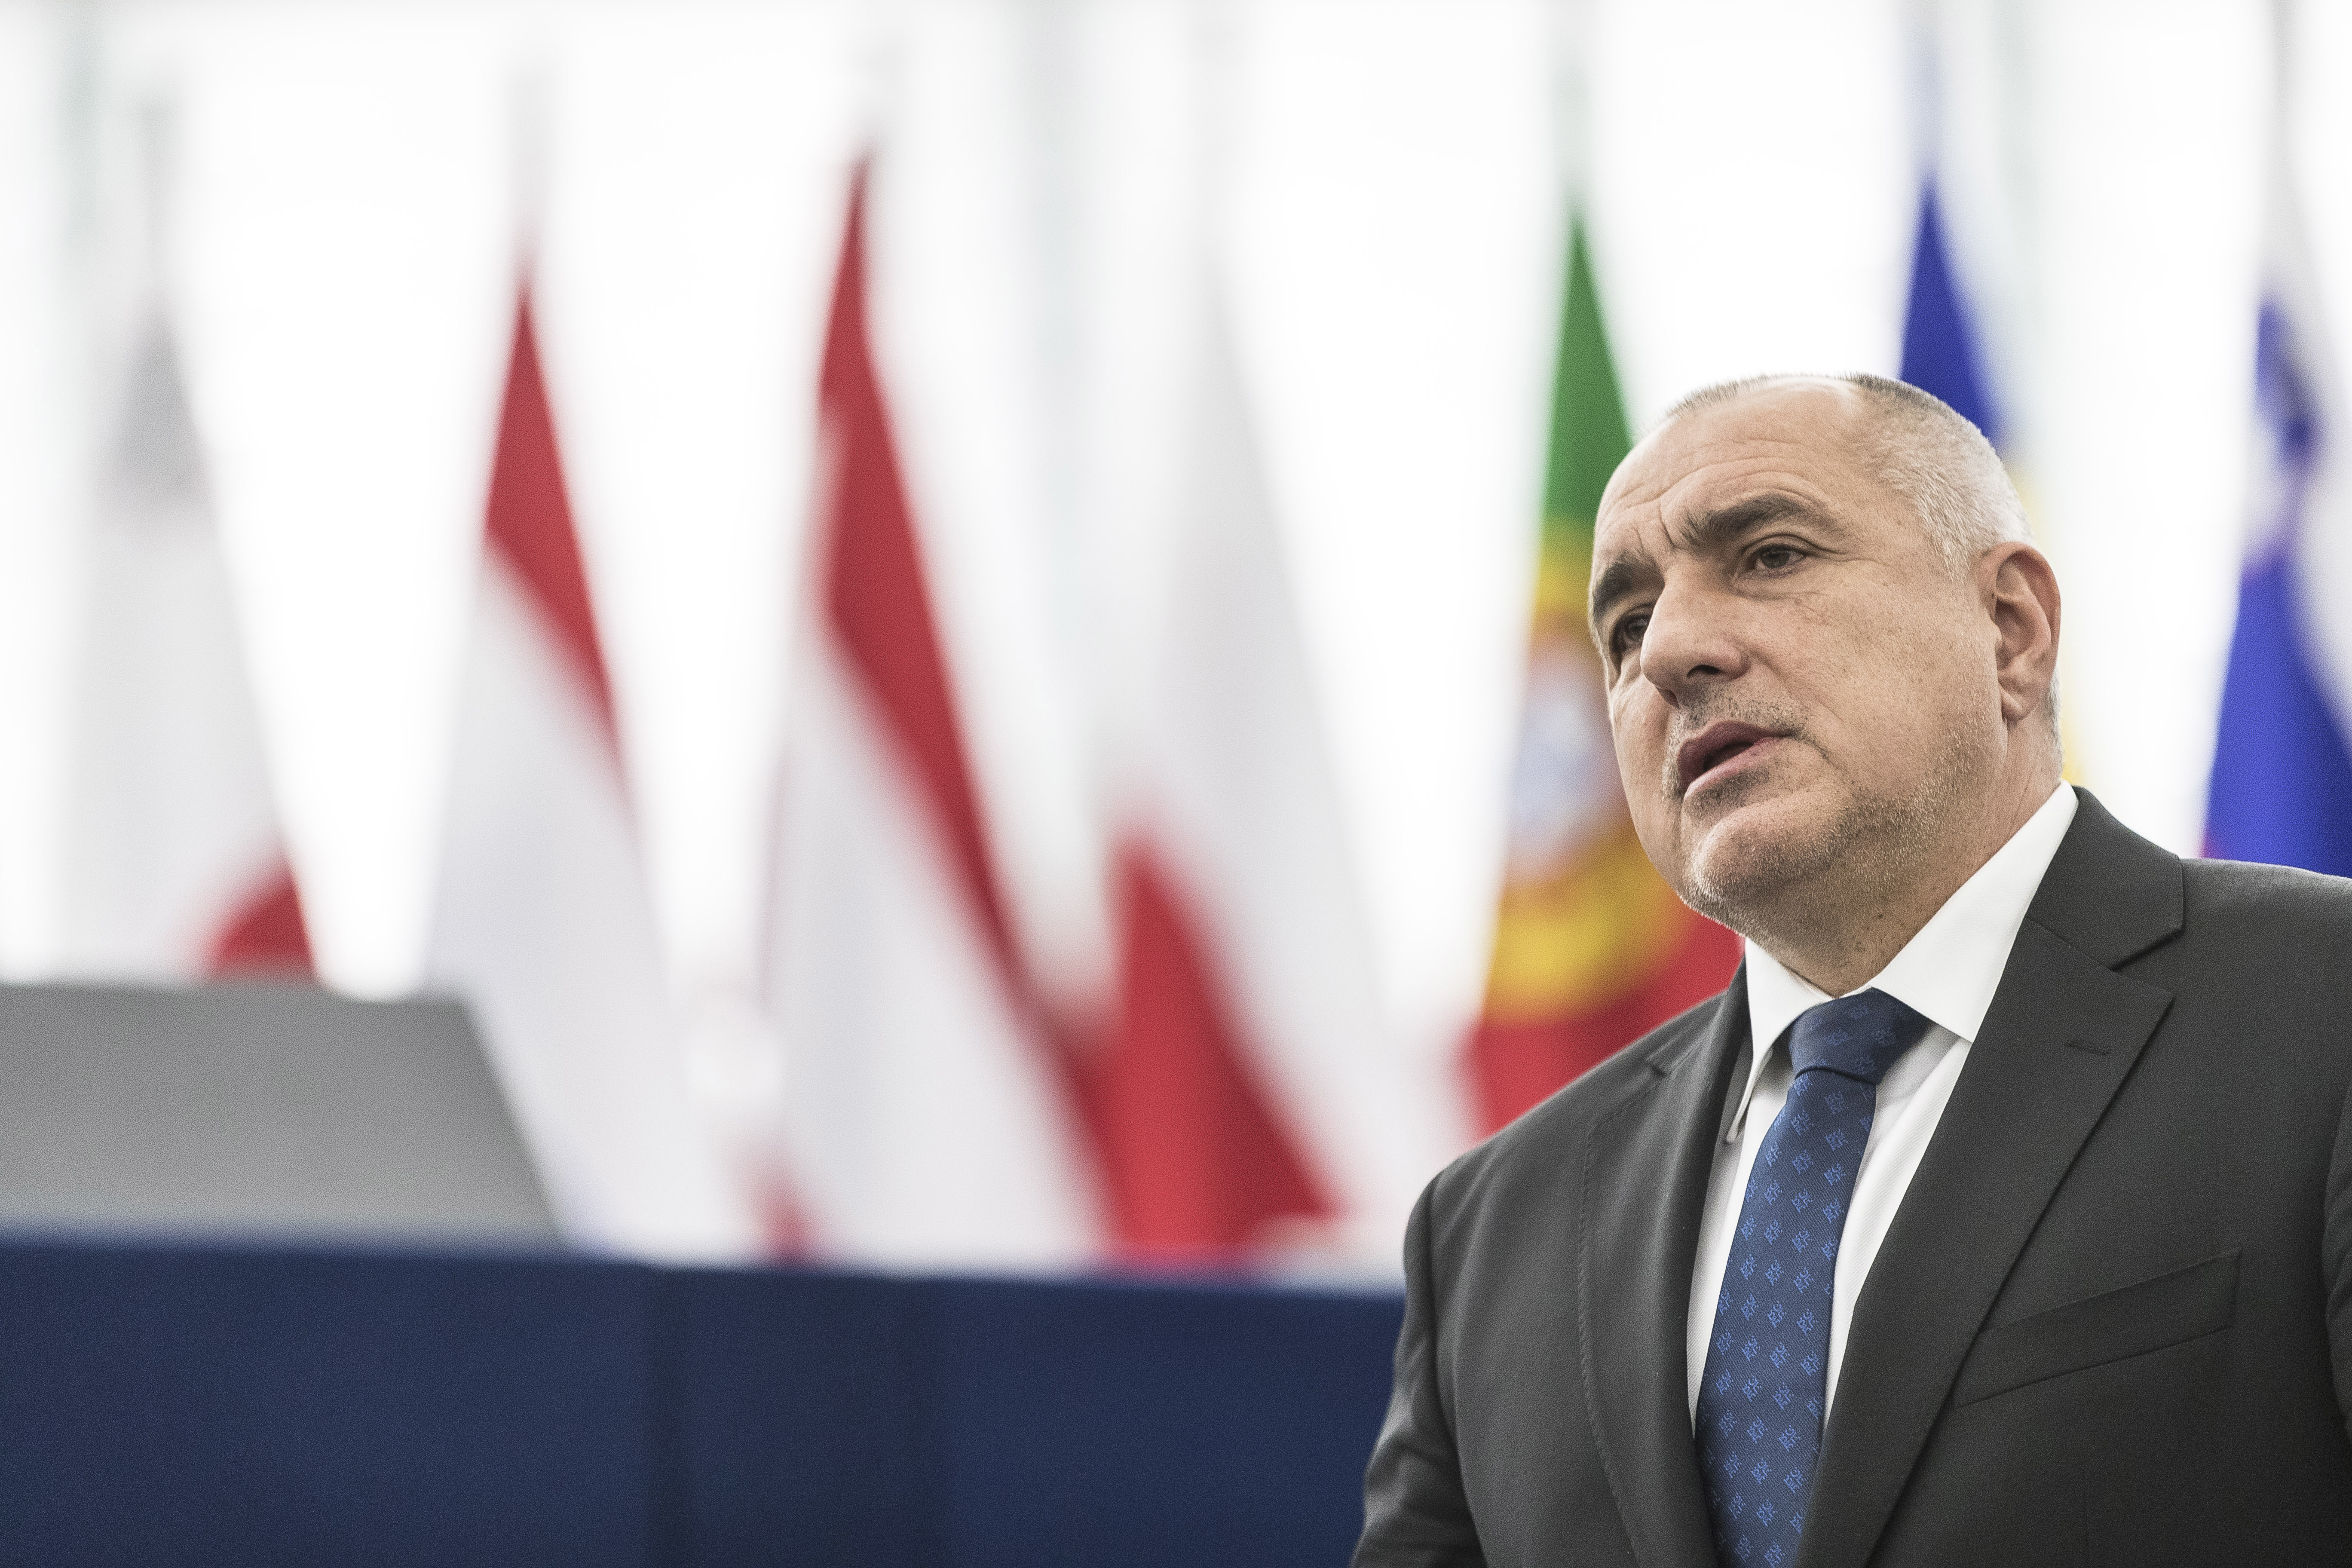 Борисов в ЕП: Един изстрел ”взривява” целите Балкани